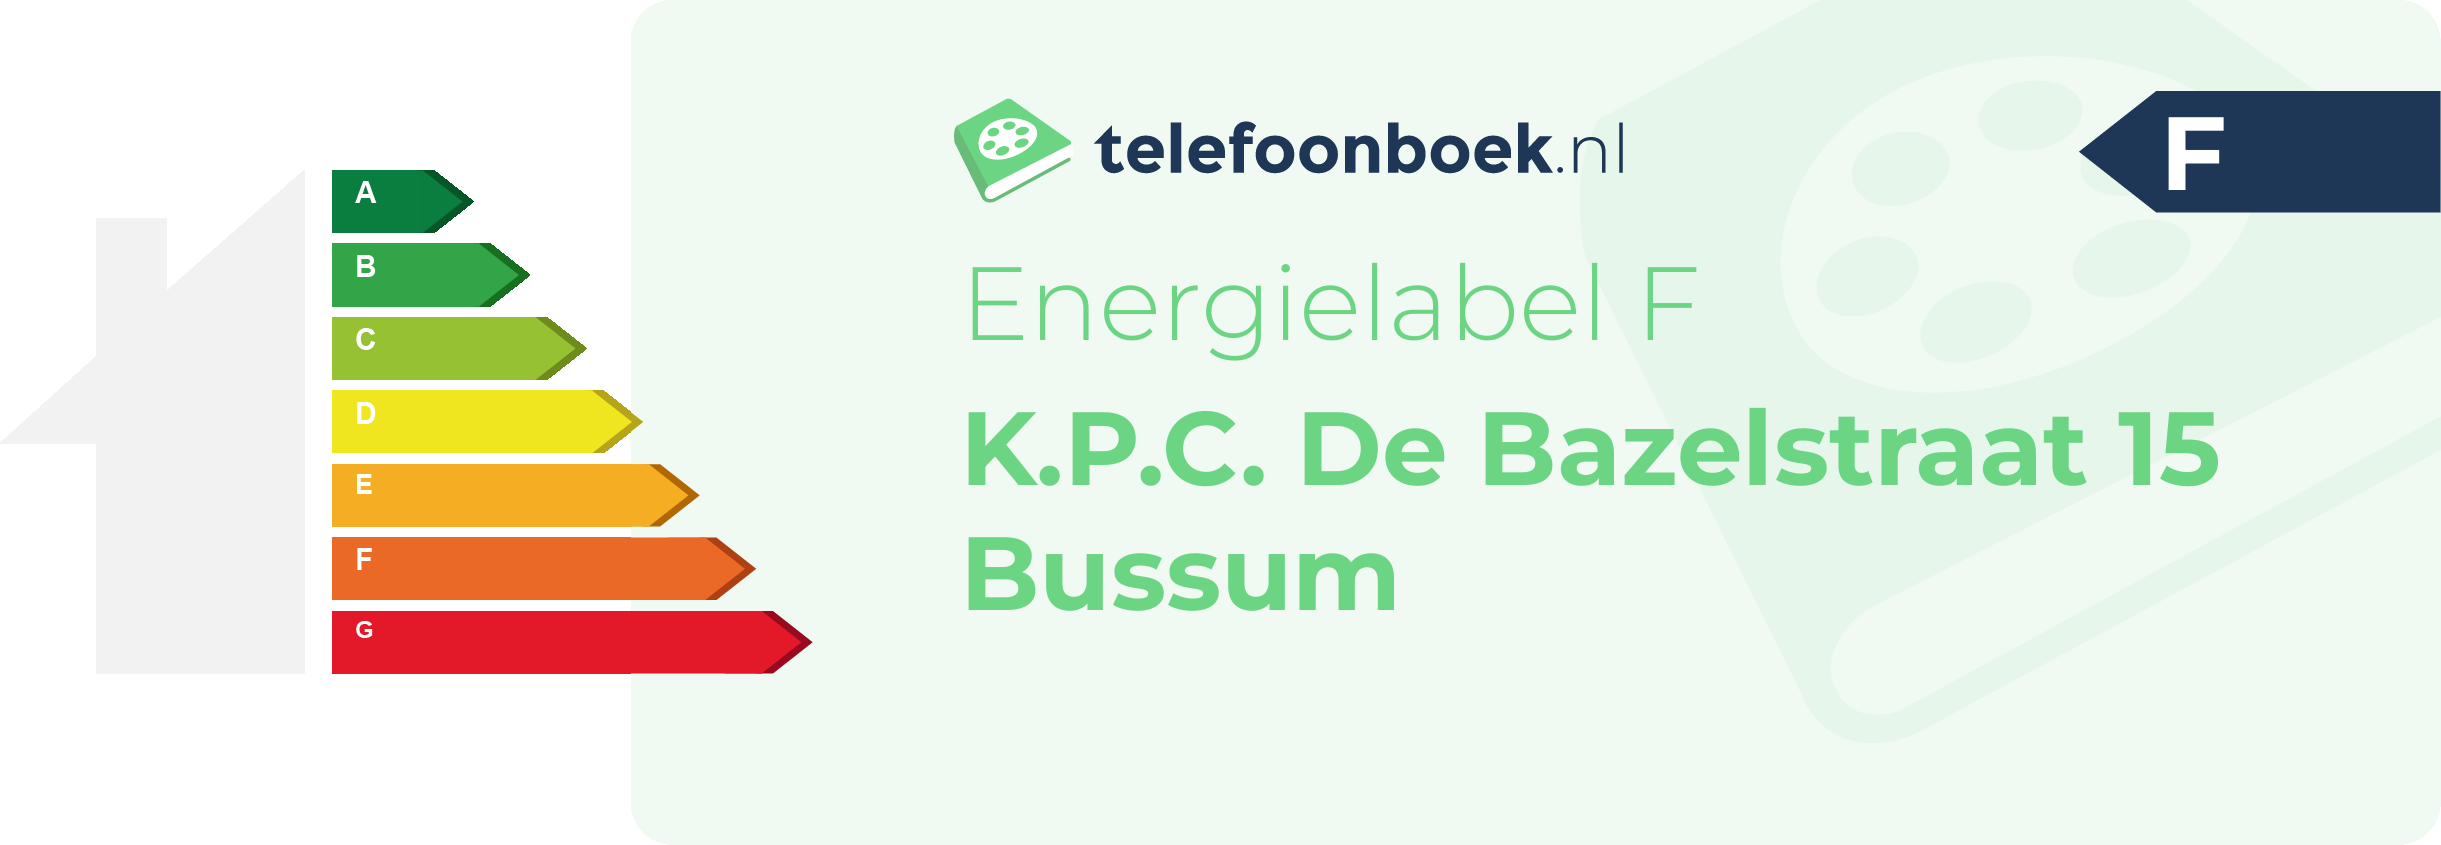 Energielabel K.P.C. De Bazelstraat 15 Bussum